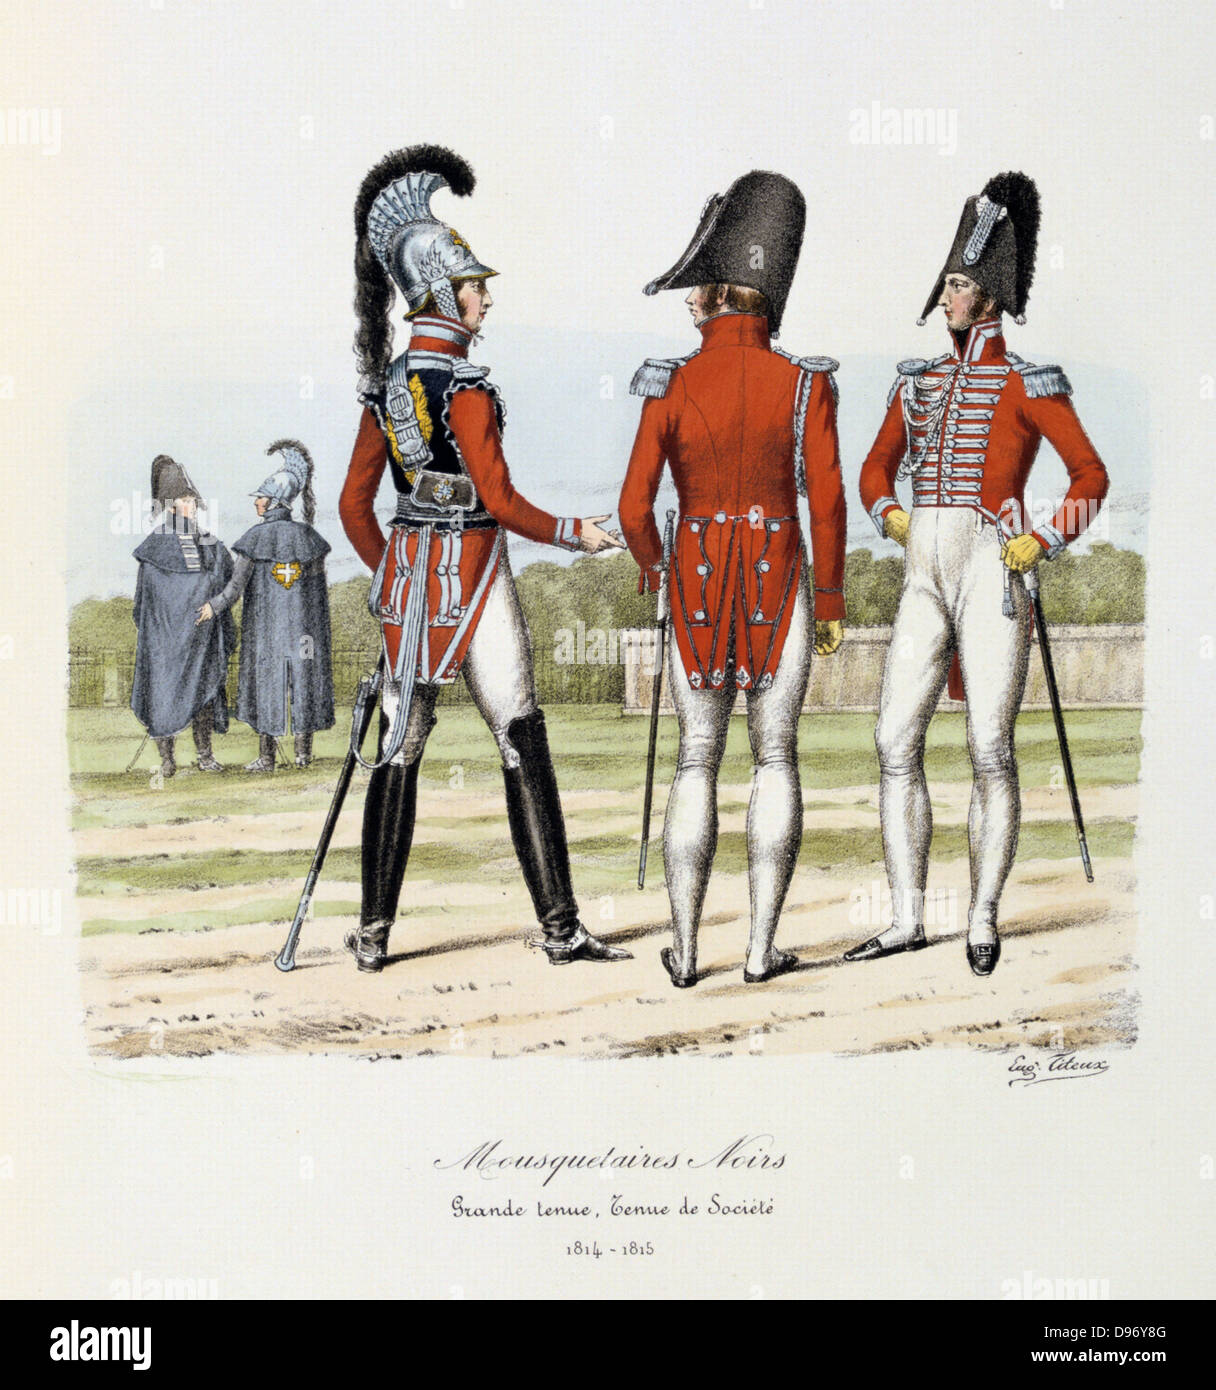 The black Musketeers, 1814-1815. From 'Histoire de la maison militaire du Roi de 1814 a 1830' by Eugene Titeux, Paris, 1890. Stock Photo